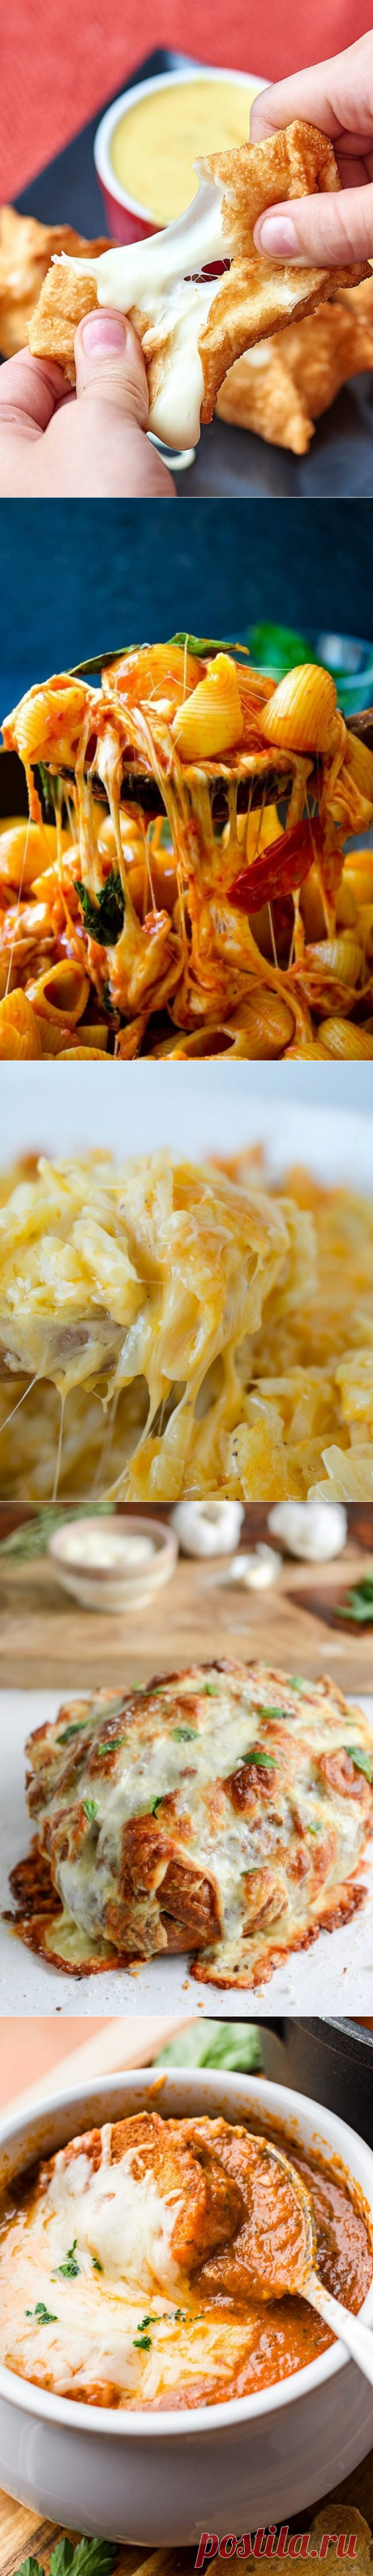 10 вкуснейших блюд с сыром